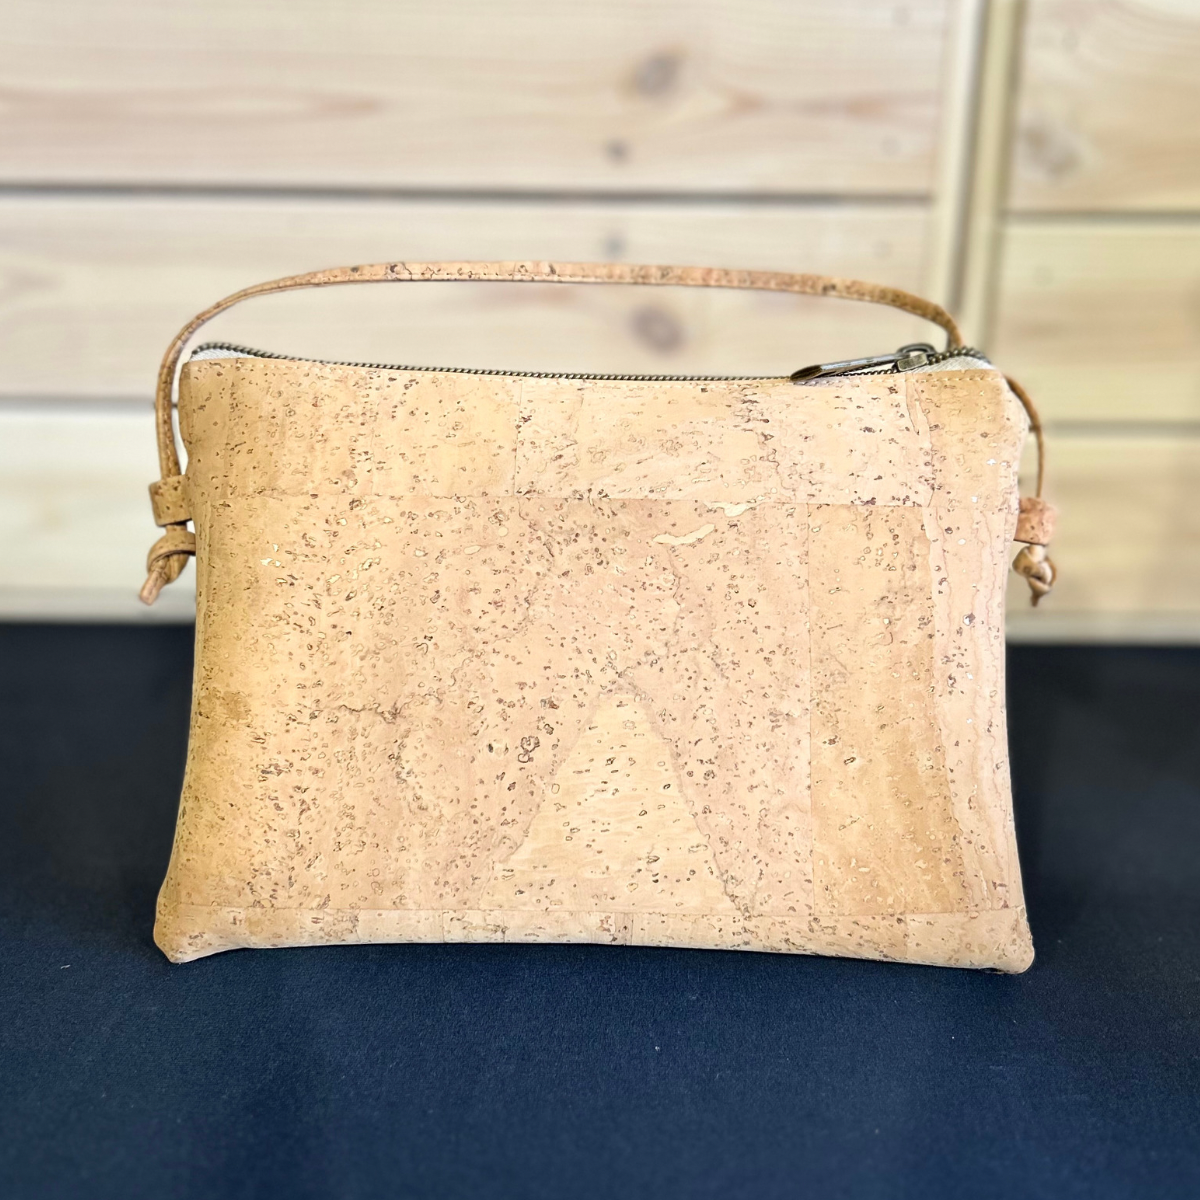 Vegan Bags – Cork Crossbody Bag with Side Details and Zipper | Montado